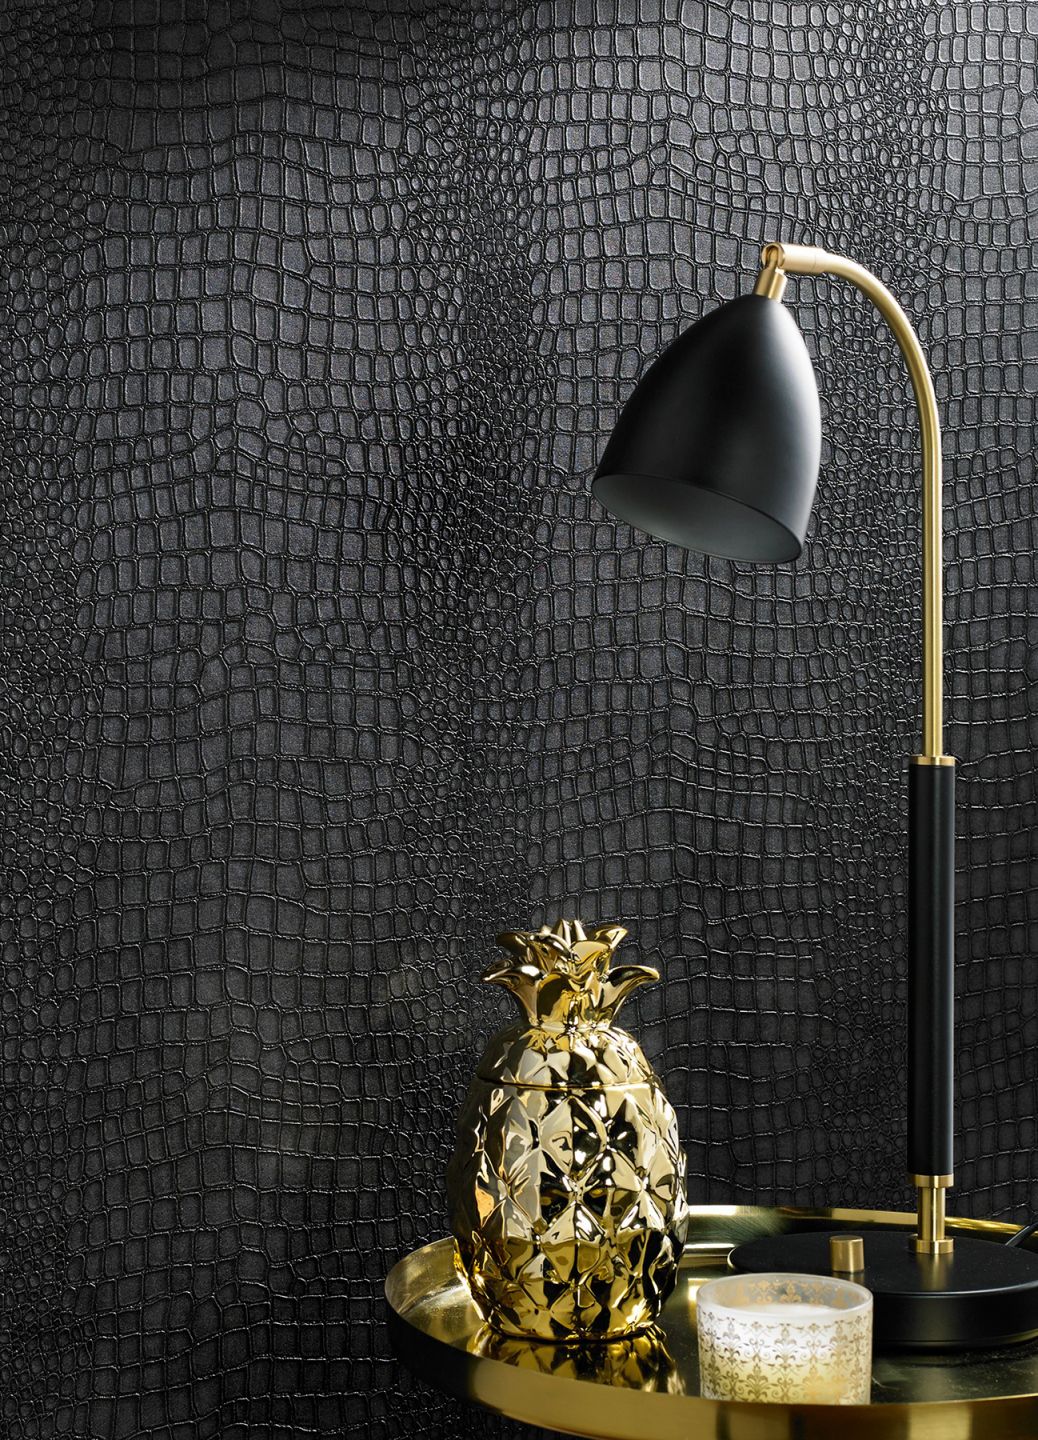 Papel de parede com aparência de couro negro de crocodilo por trás de uma mesa de apoio dourada com um candeeiro de mesa e um ananás decorativo dourado